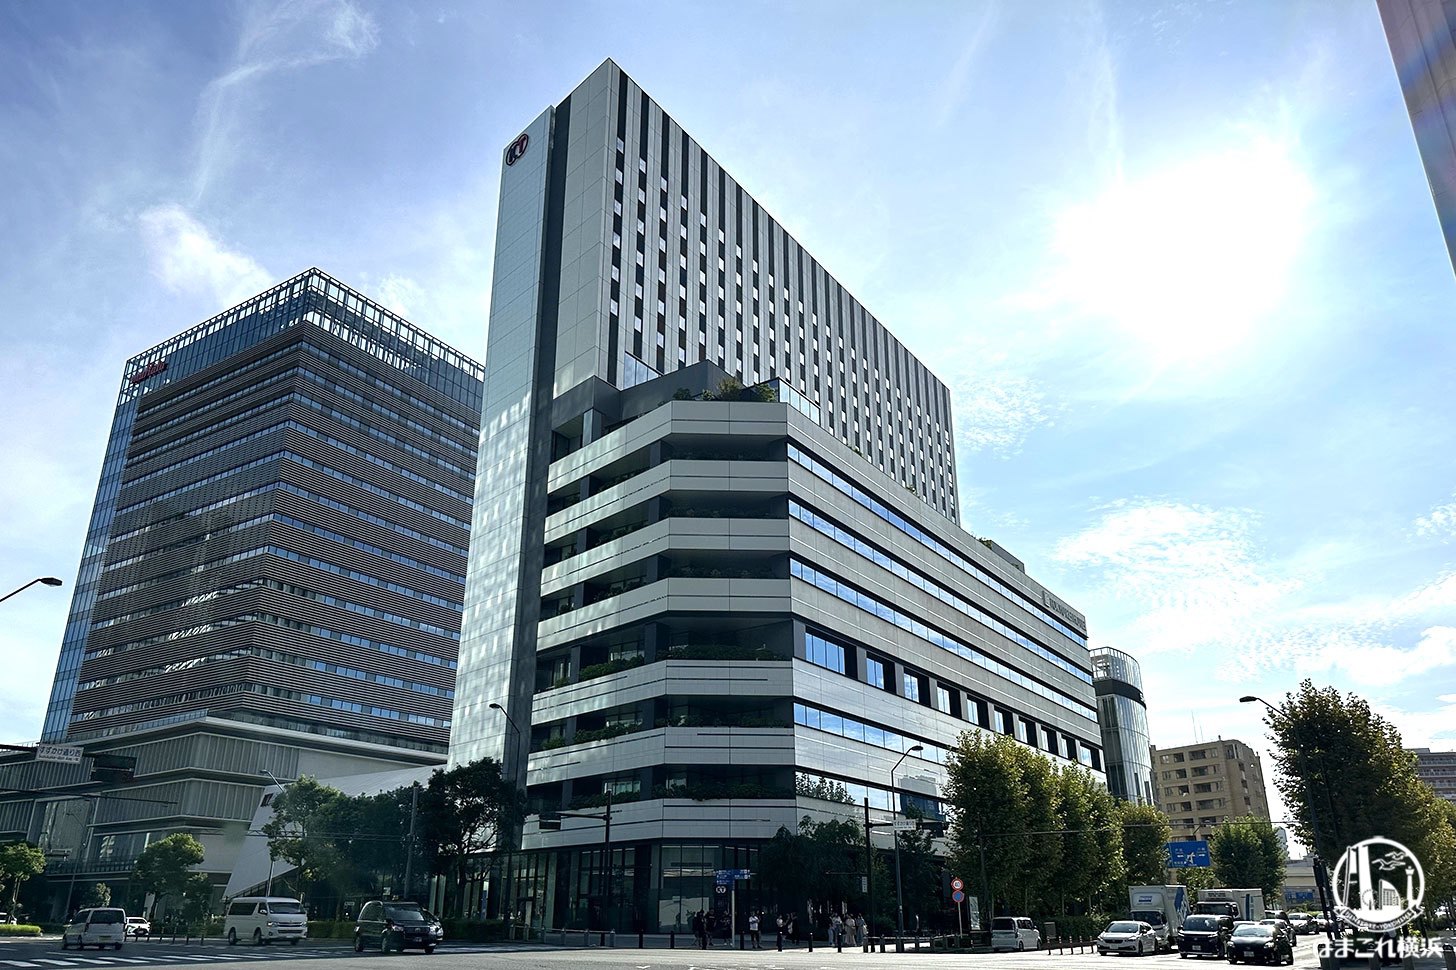 横浜東急REIホテル